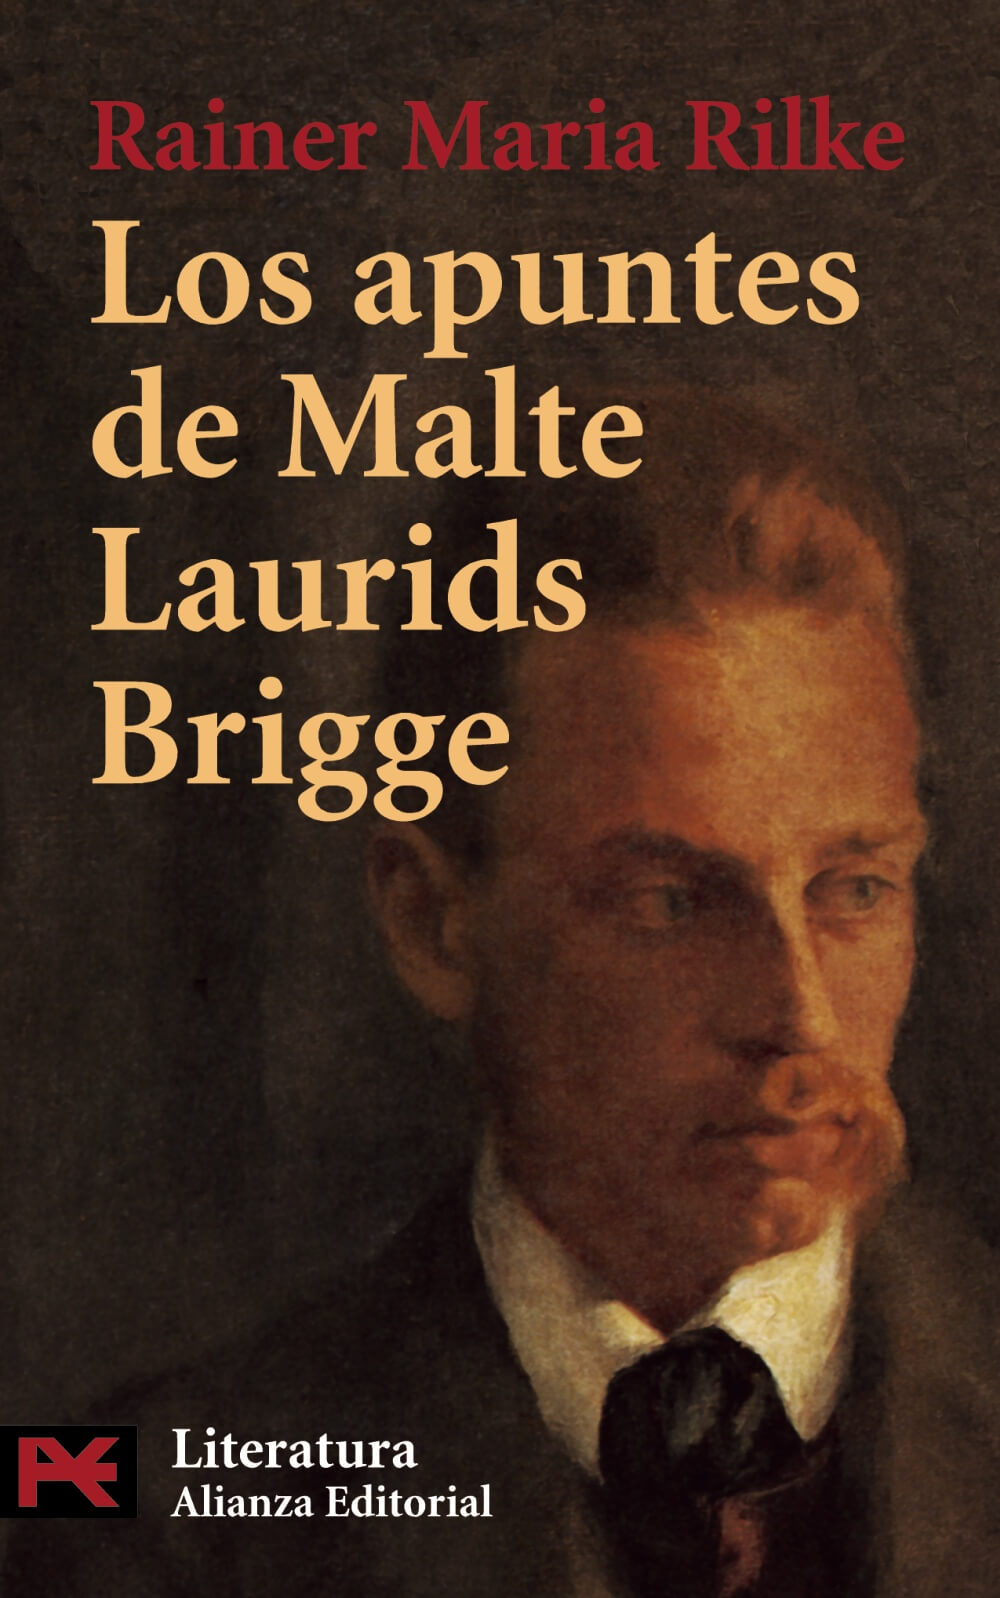 Los cuadernos de Malte Laurids Brigge